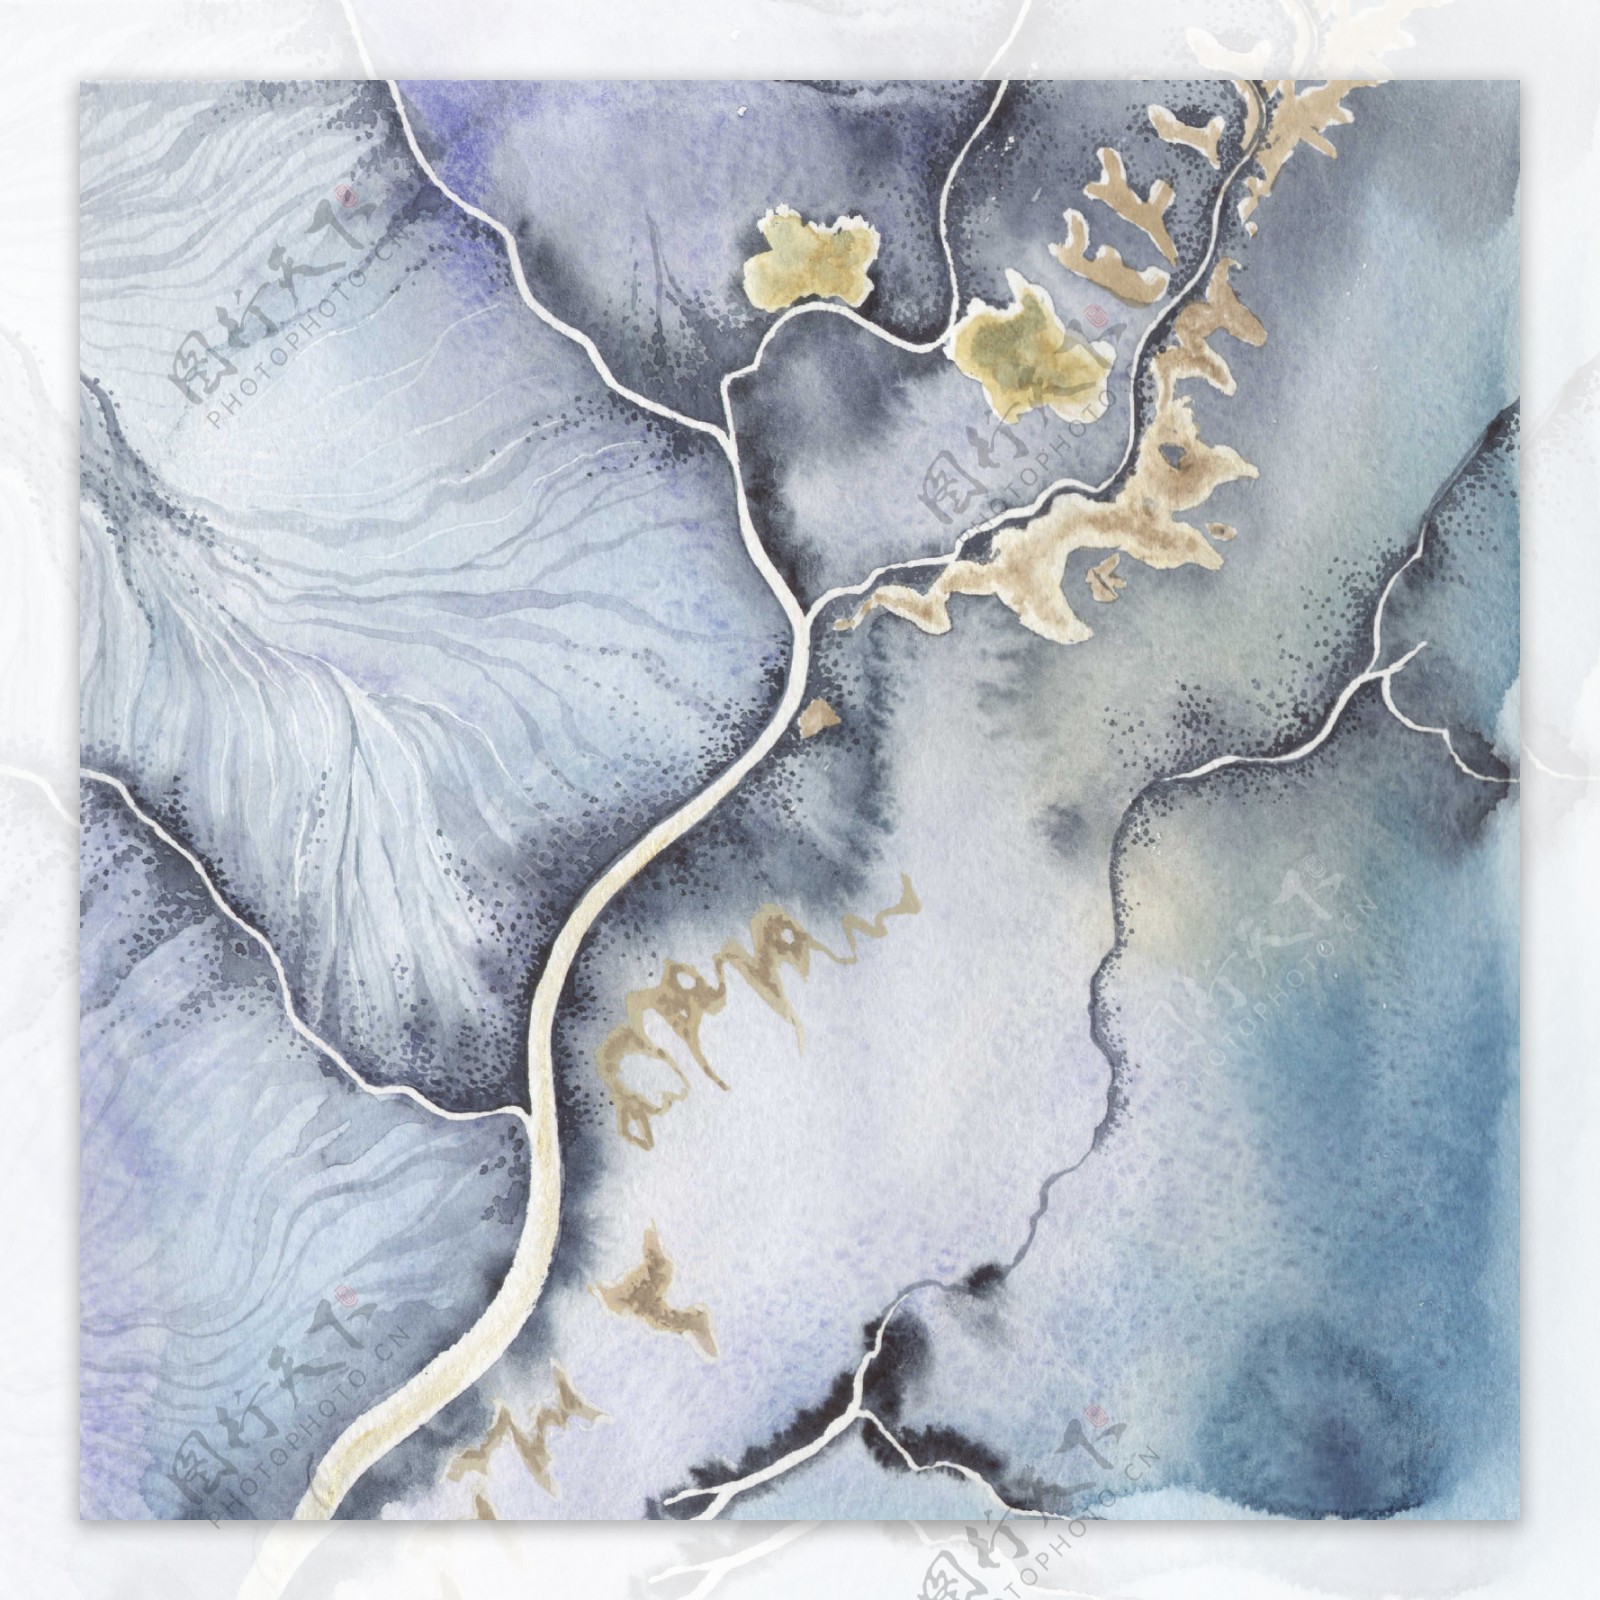 温婉高雅蓝灰色河流状壁纸图案装饰设计